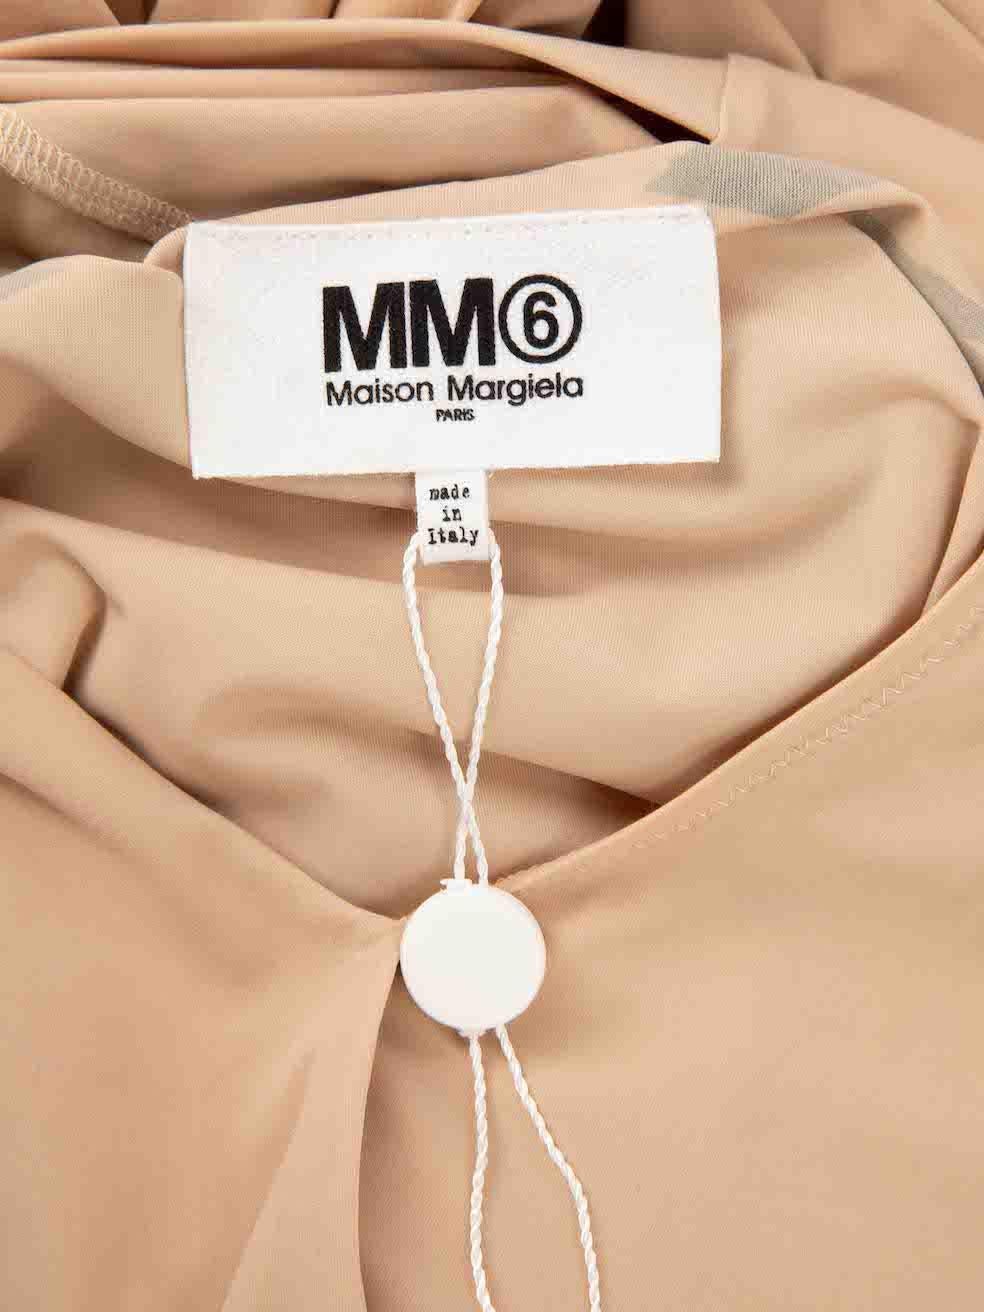 Maison Margiela Women's MM6 Maison Margiela Nude Graphic Print Tie Neck Bodysuit For Sale 7